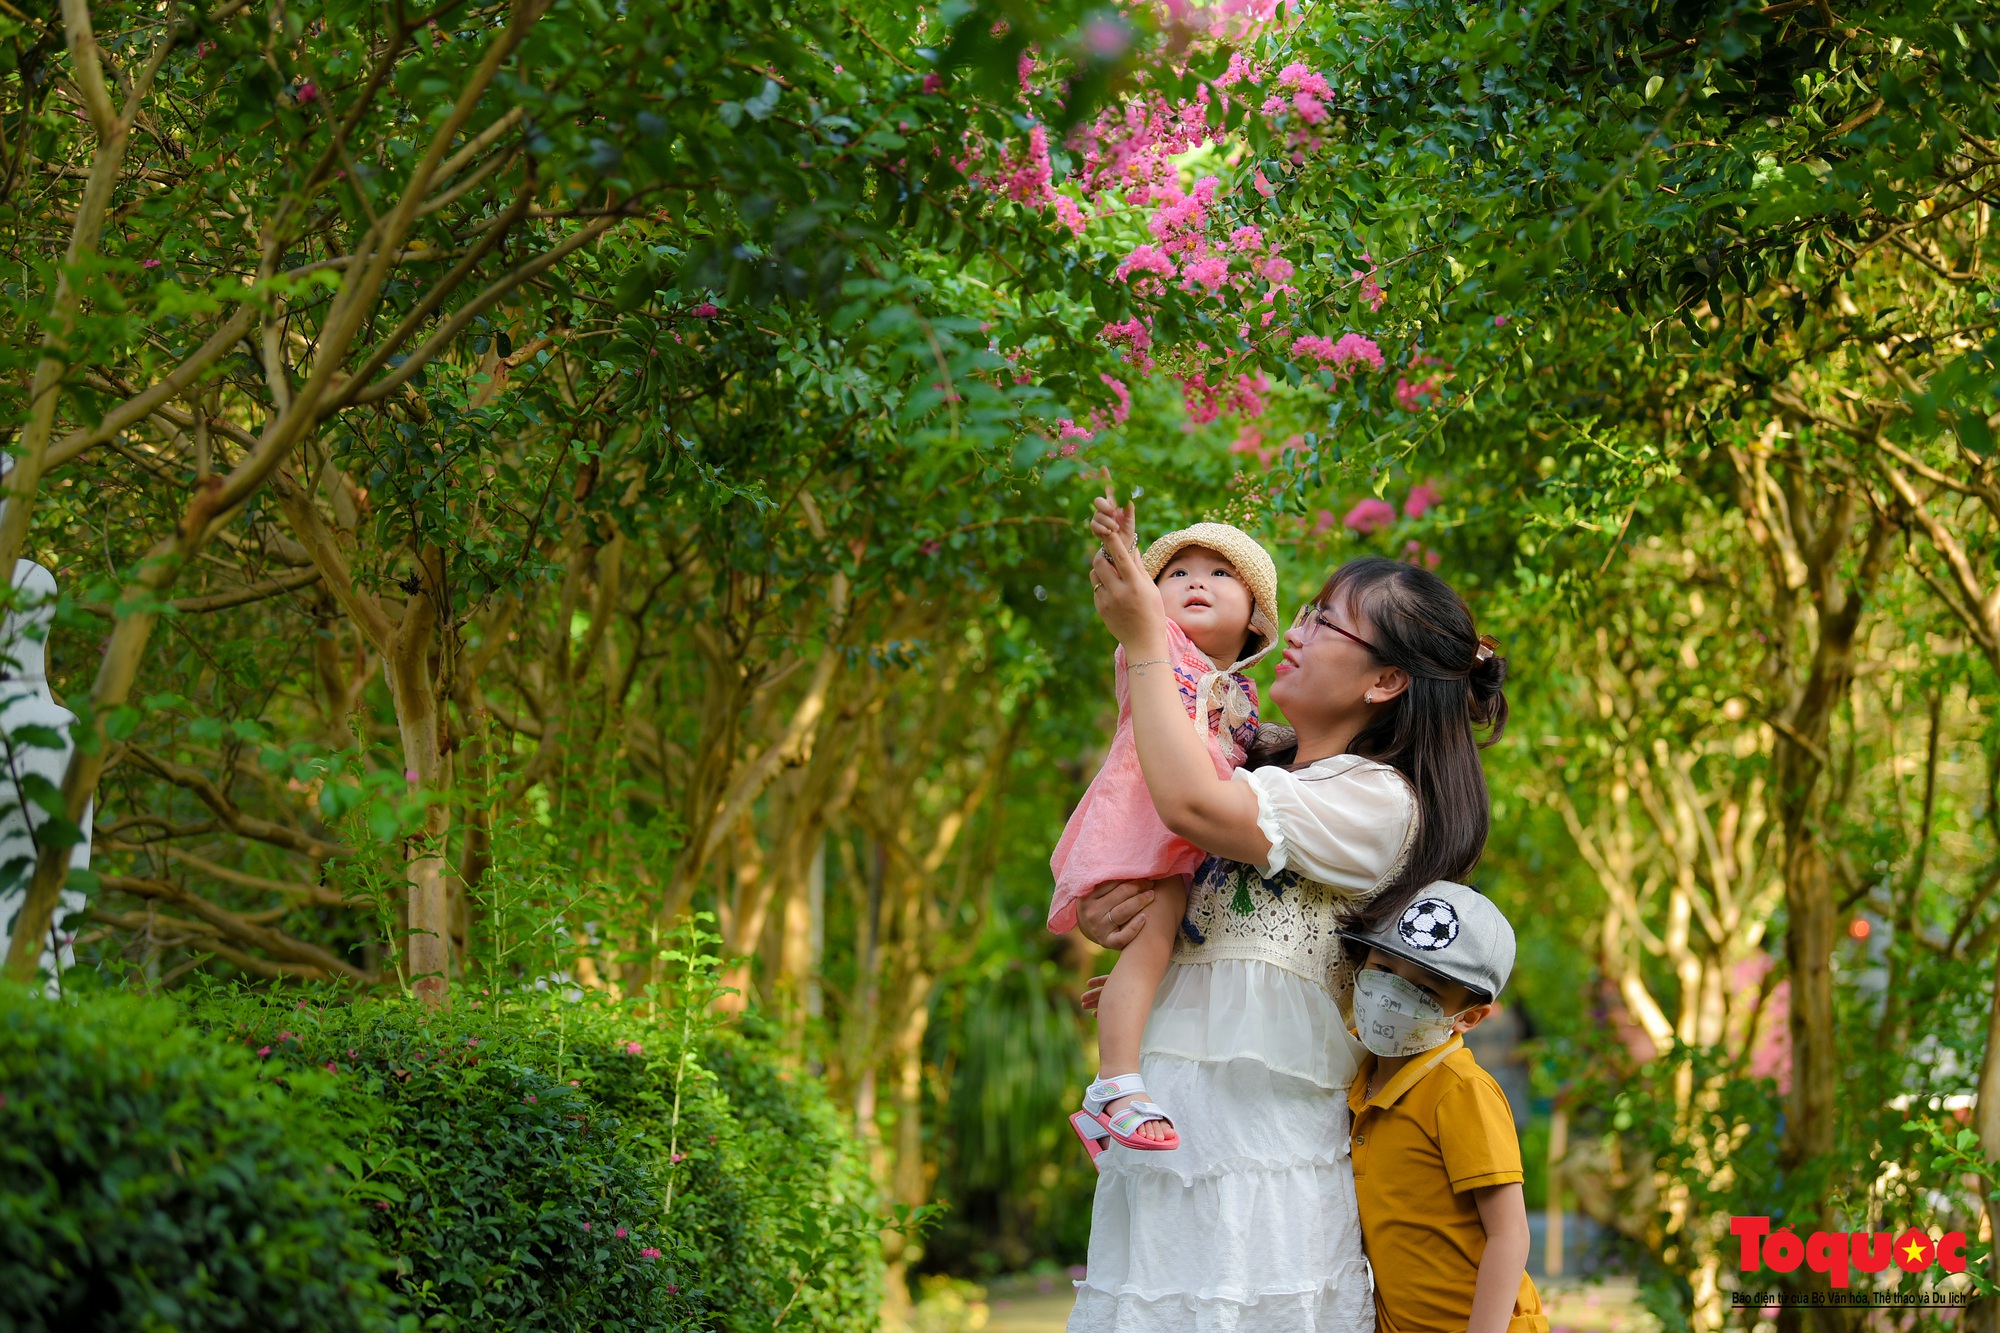 Người dân thủ đô  thích thú với vườn cổ tích tường vi ở Hà Nội - Ảnh 9.